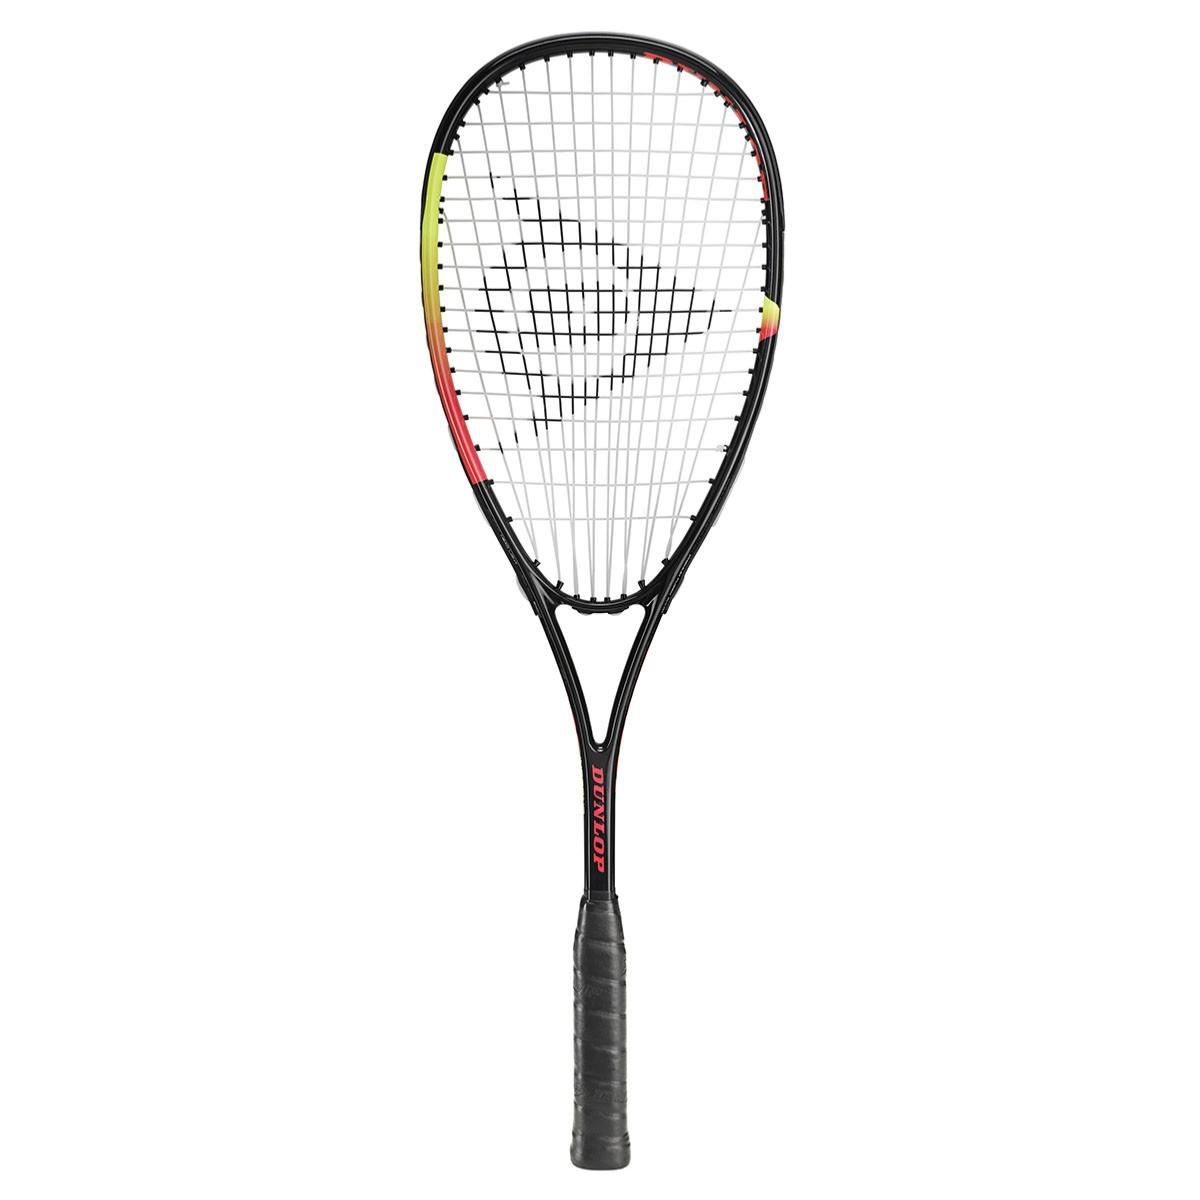 Comprar de squash Dunlop Pro 3.0 al mejor precio